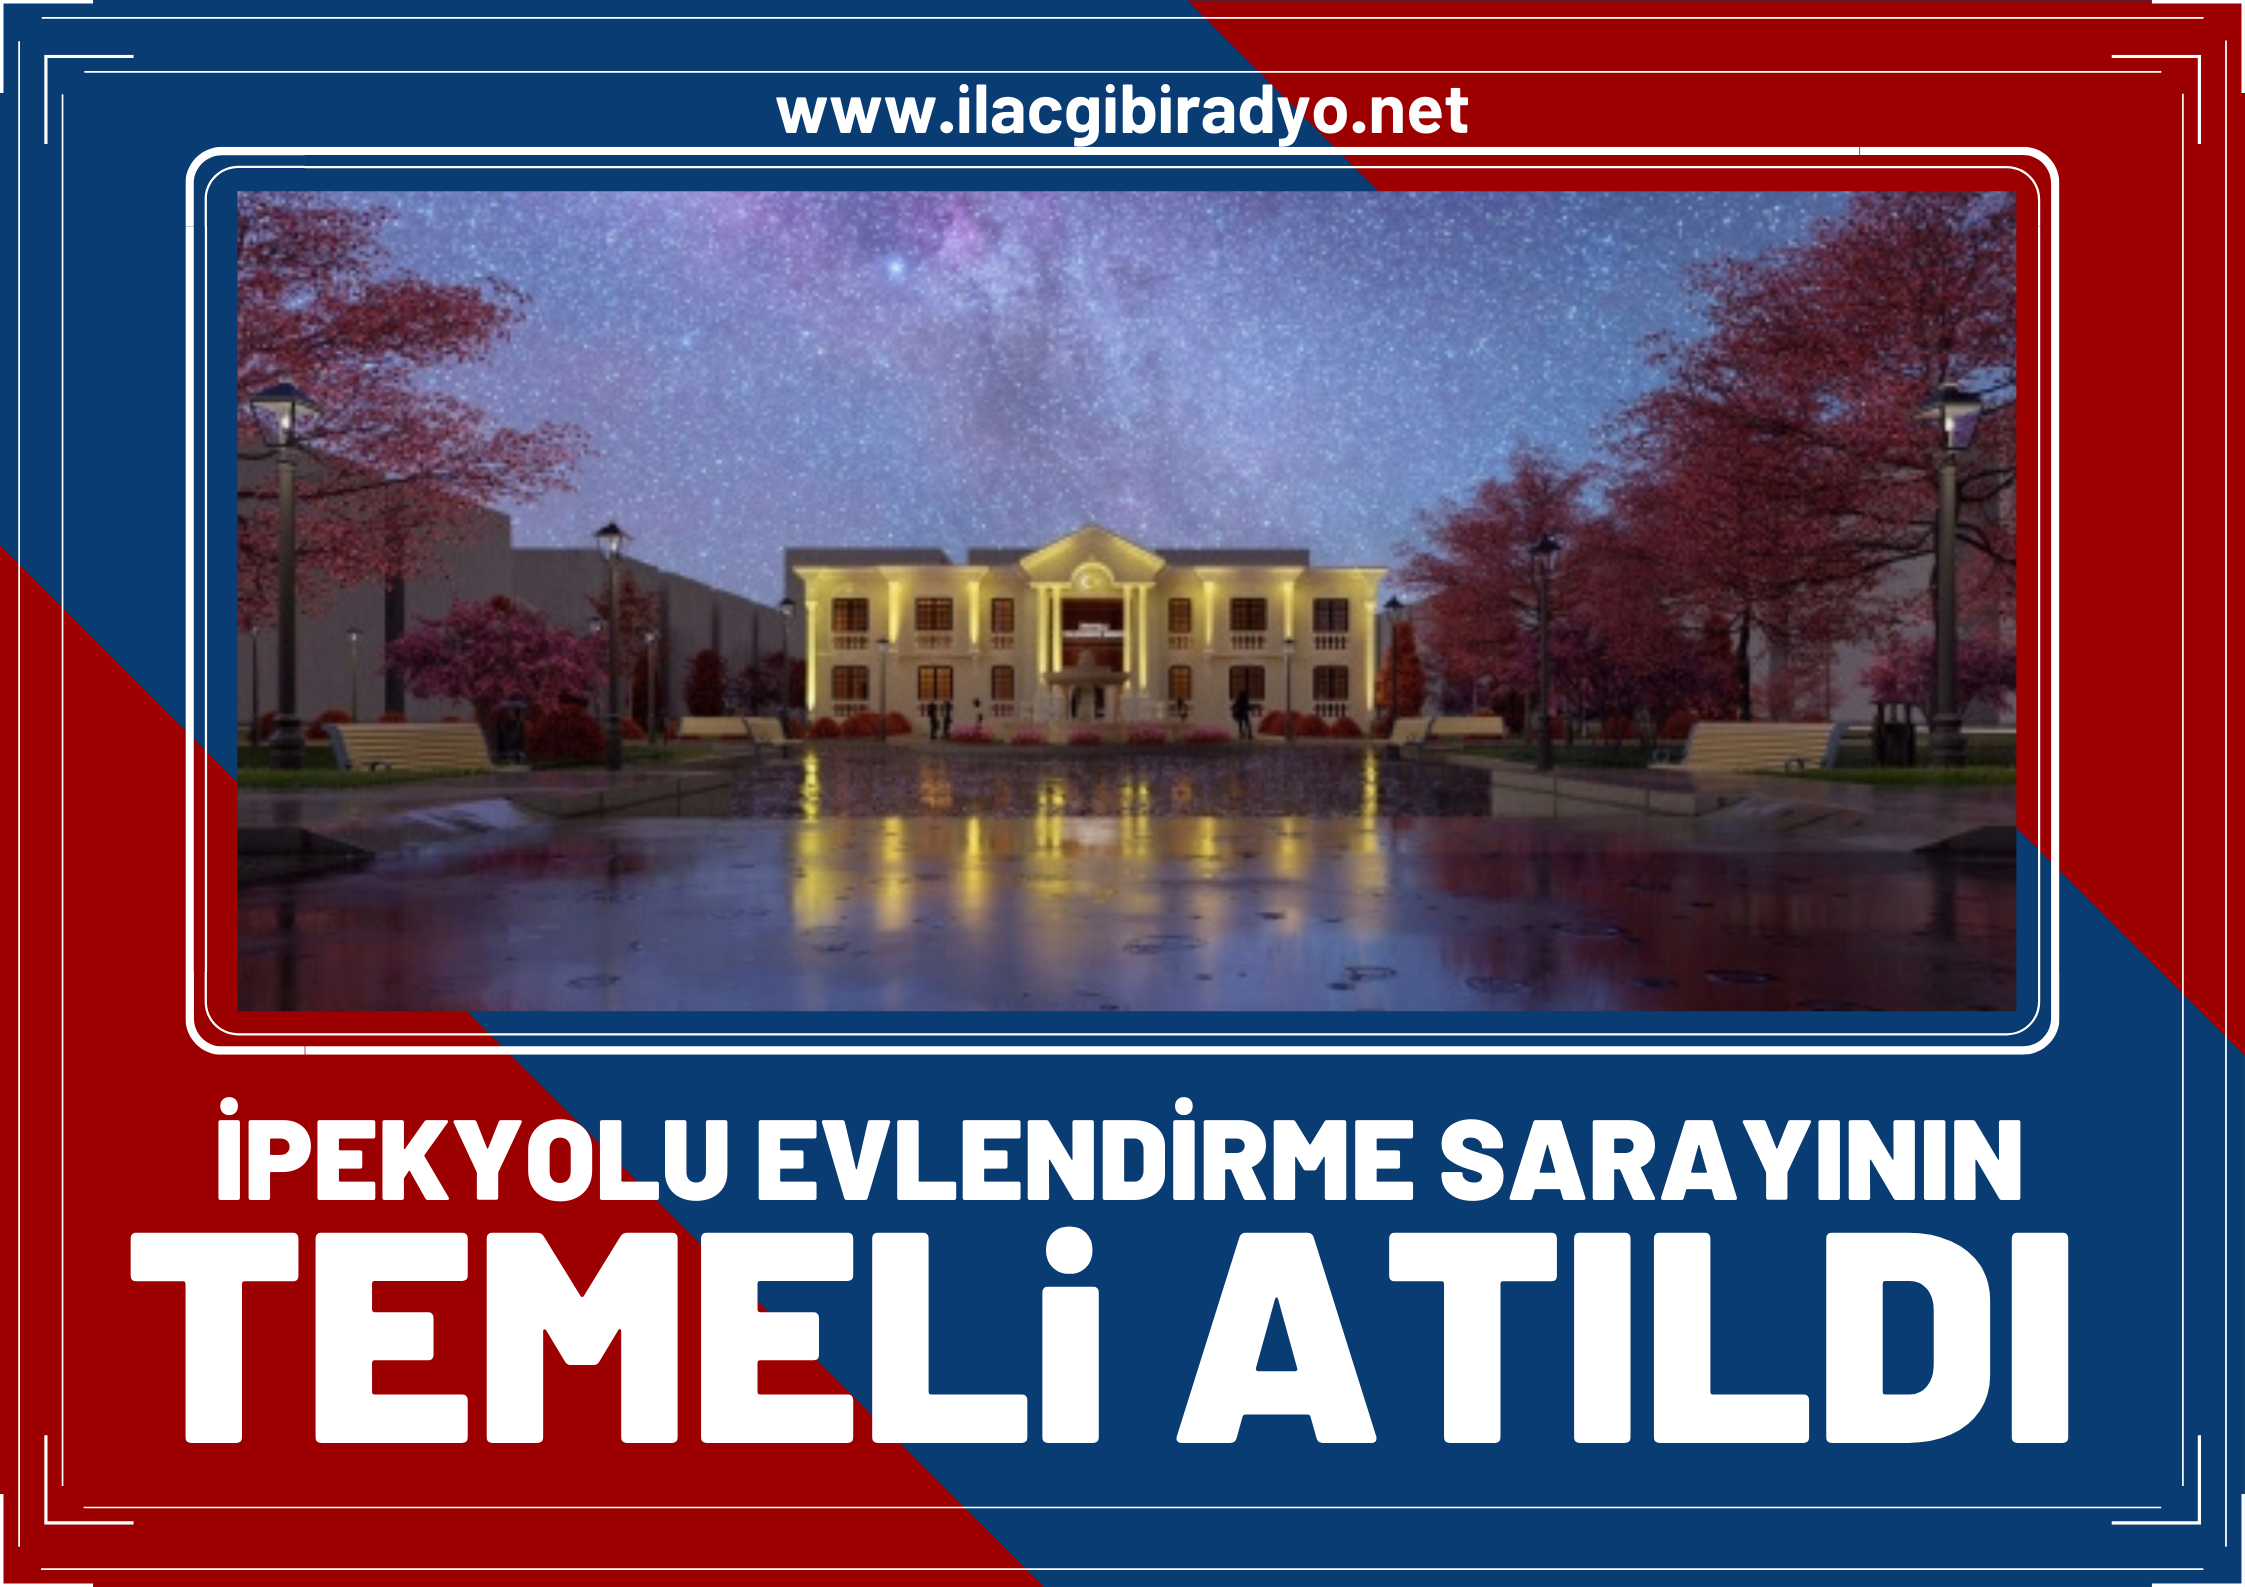 İpekyolu Belediyesi Evlendirme Sarayının temelini attı!